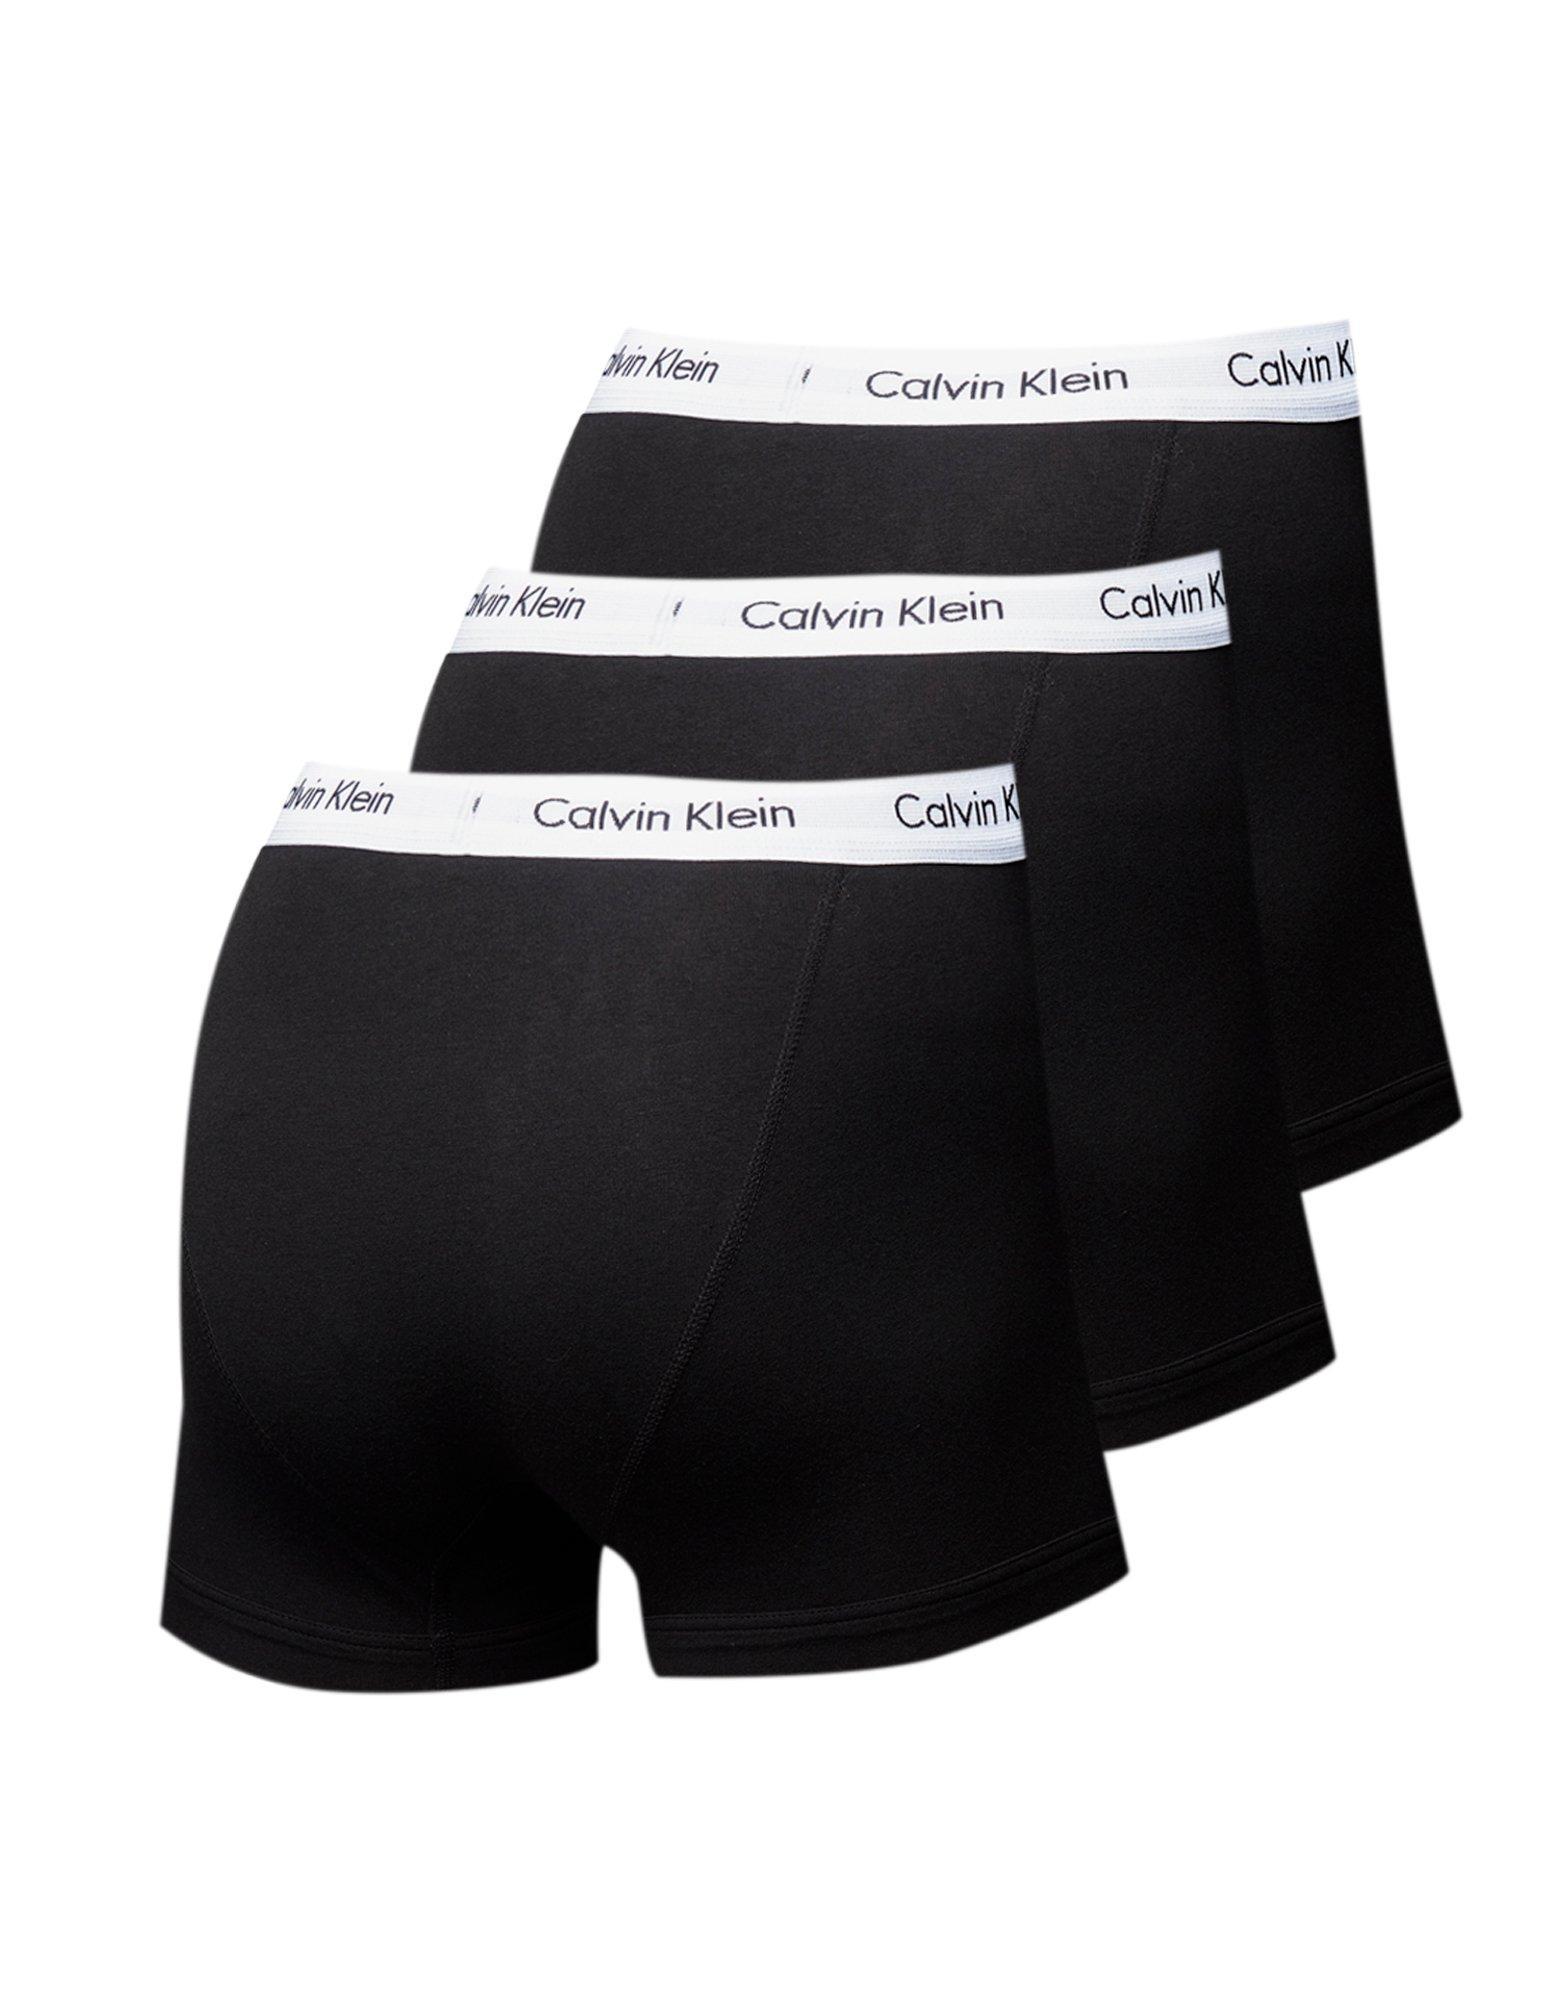 Lyst - Calvin Klein 3 Pack Boxer Shorts in Black for Men